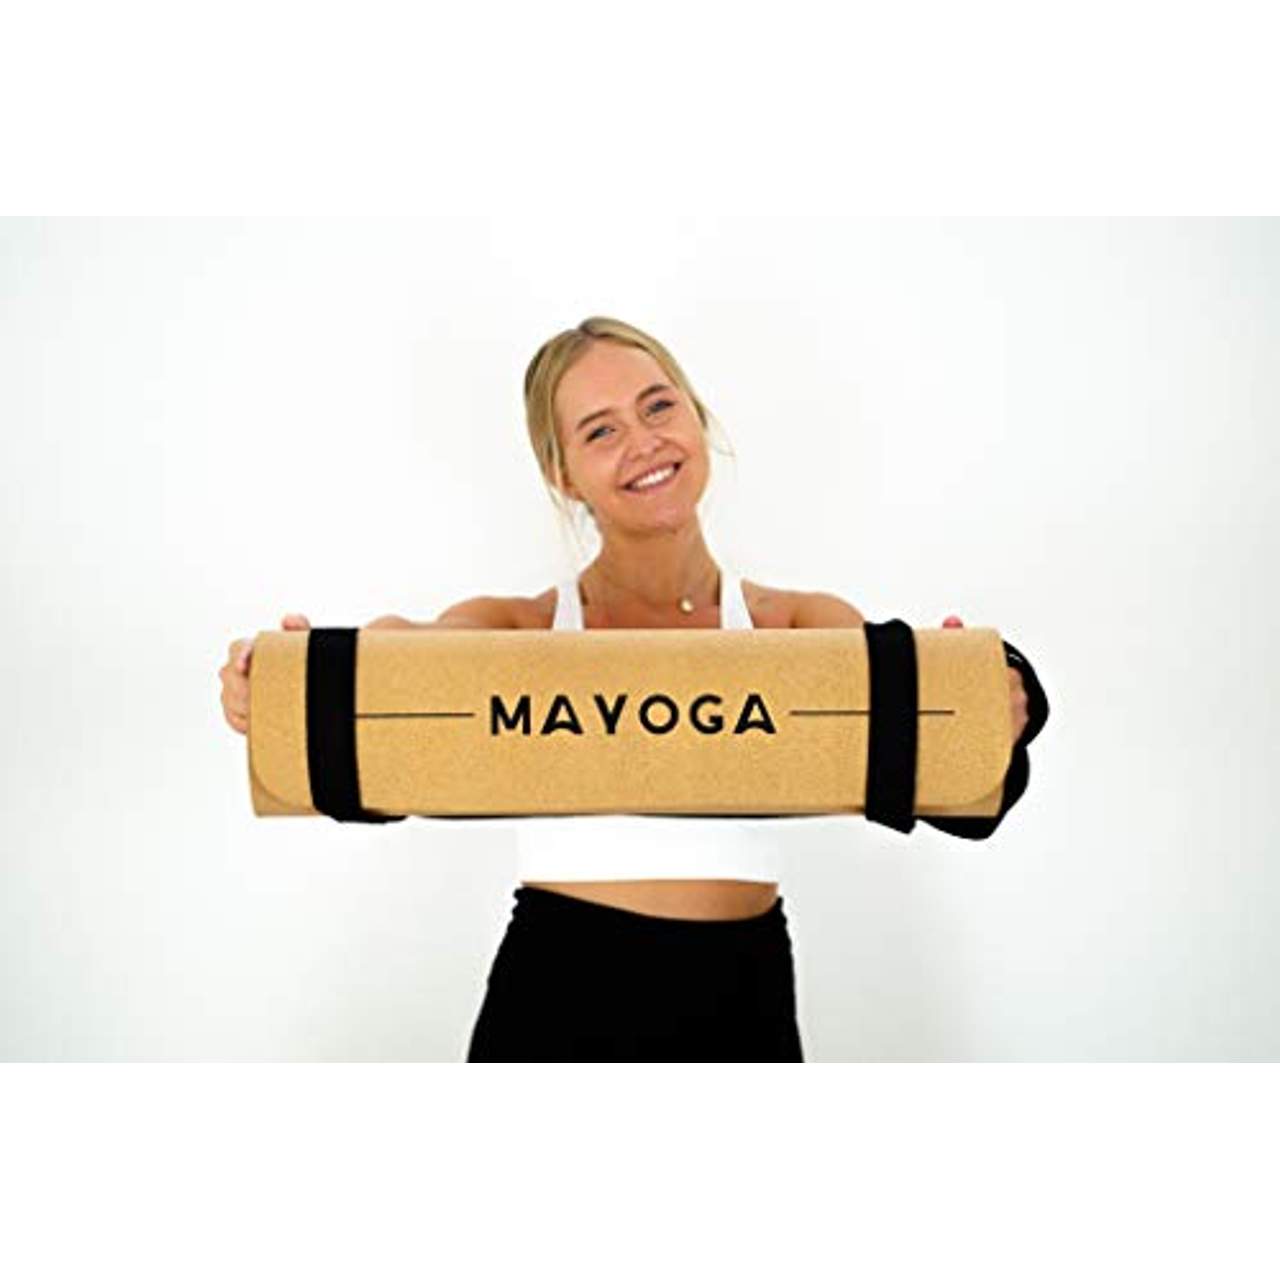 MAYOGA MAYOGA-Yogamatte aus Kork